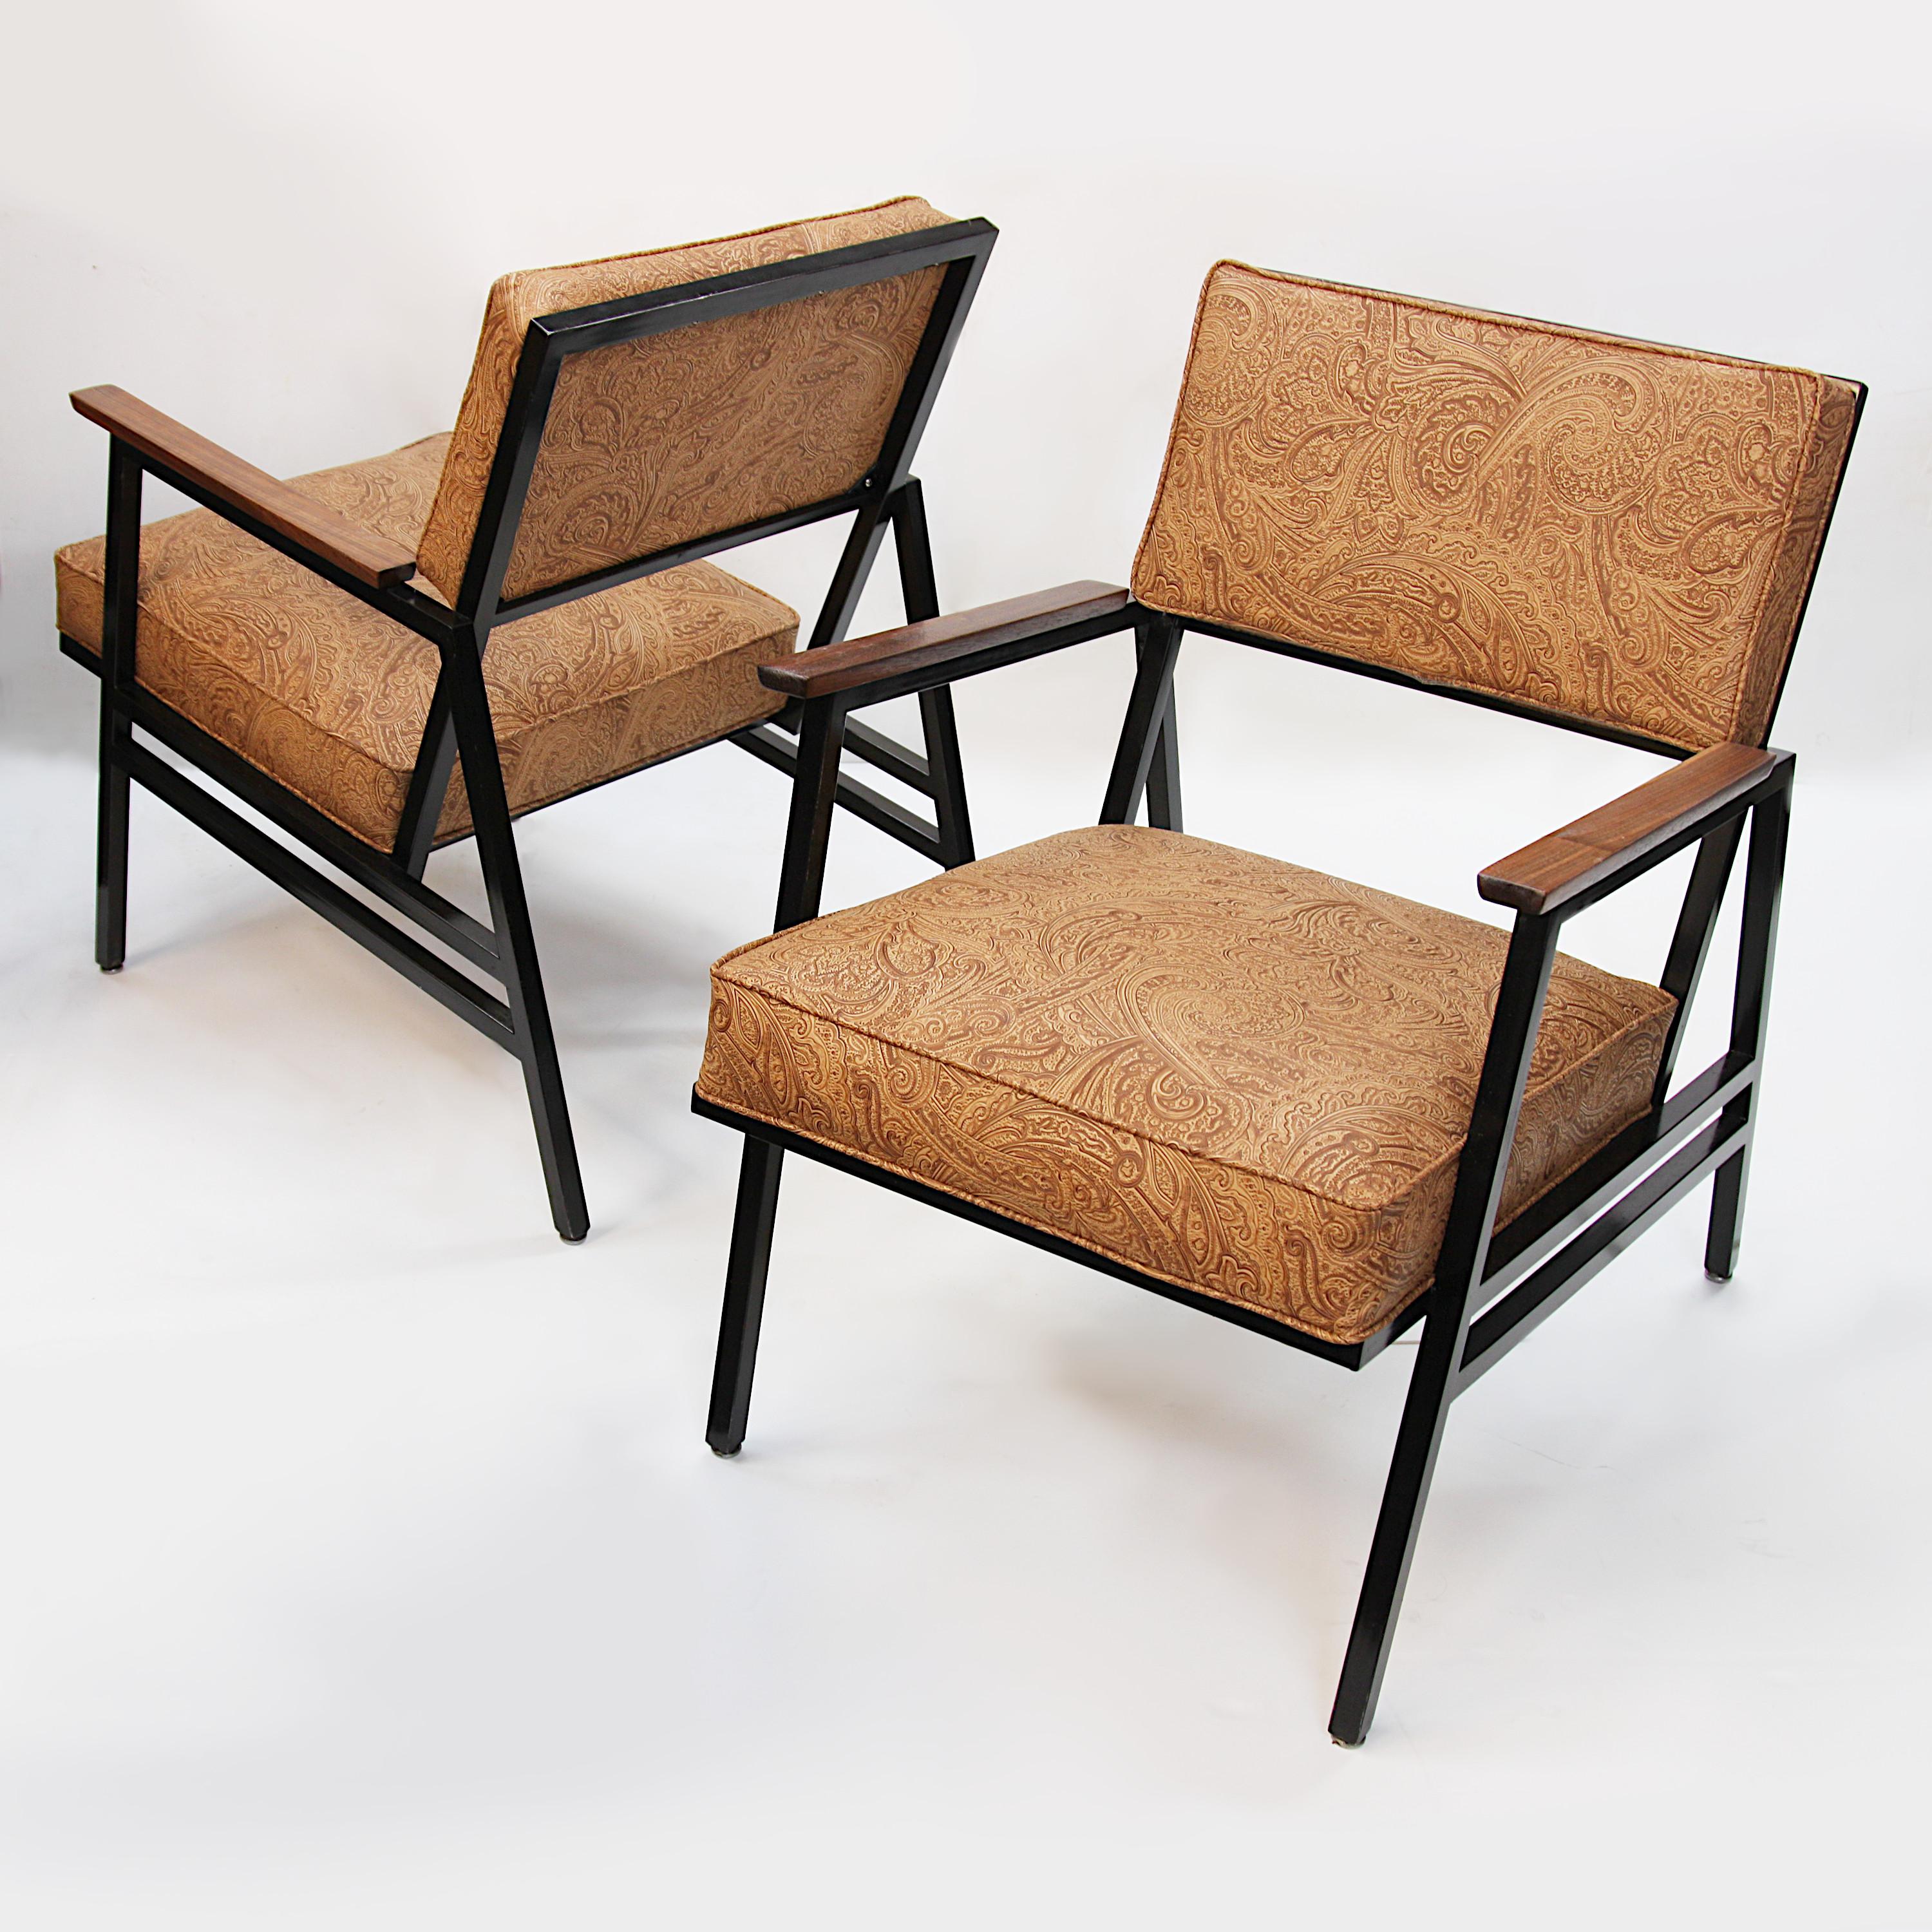 Charmantes Paar Sessel mit Streel-Frames aus dem Jahr 1965 von Steelcase Inc. Die Stühle verfügen über kantige, schwarz lackierte Stahlrahmen, Armlehnen aus Walnussholz und neues sattelbraunes Vinyl, das mit einem klassischen, vom Westen